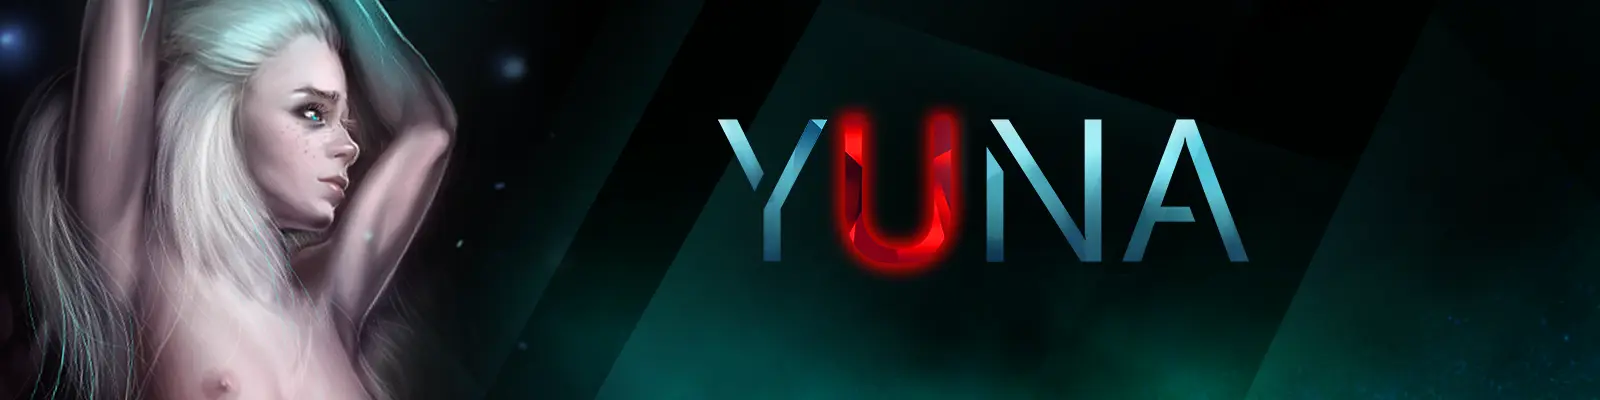 Yuna: Reborn + Arena[Arena 8.10] main image